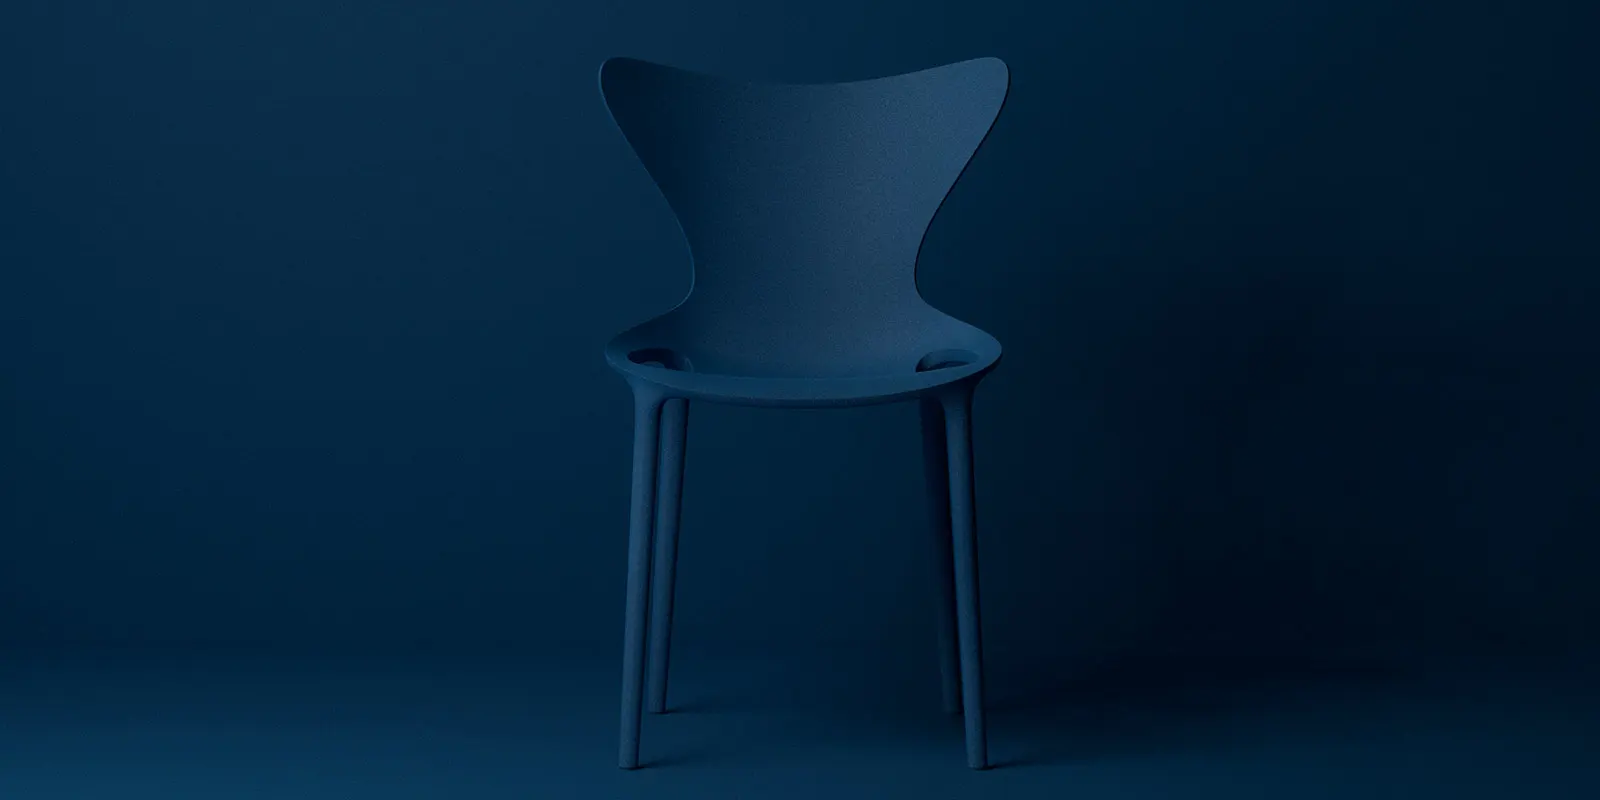 vondom-contract-chaises-empilables-mobilier-CHR-design-love-eugeni-quitllet (6) copie